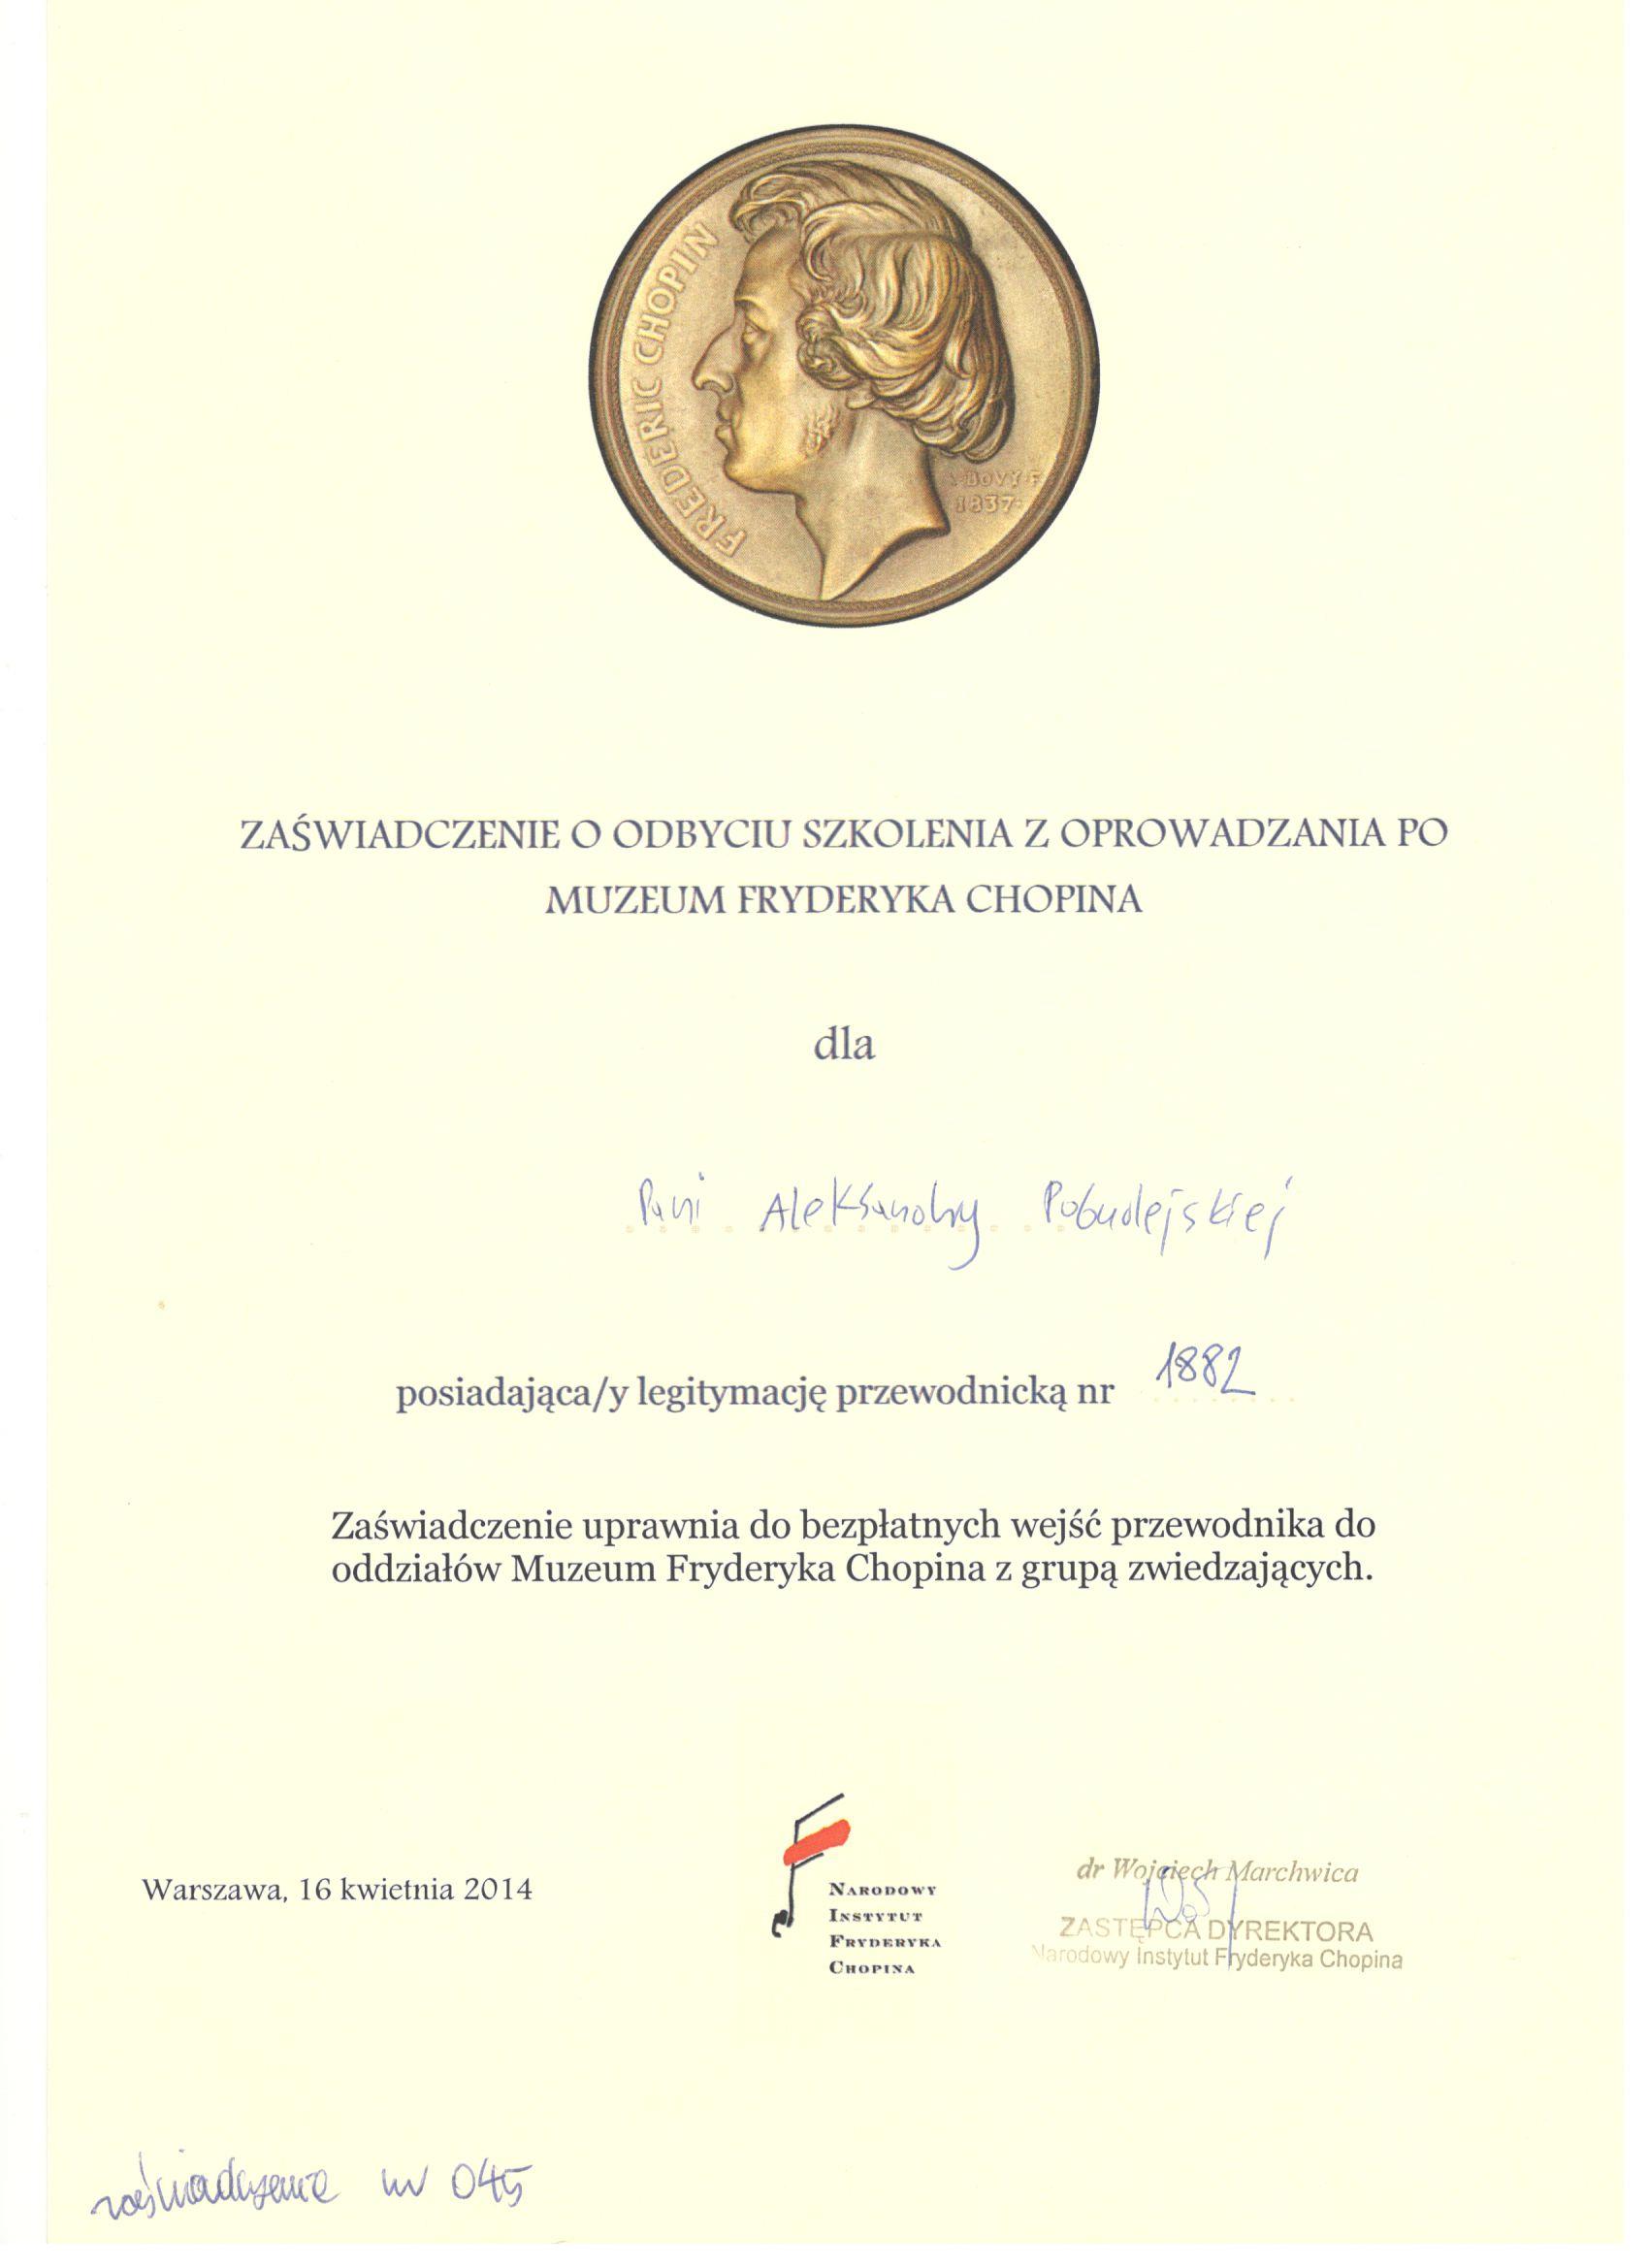 Step in Warsaw - Stadtführerin in Warschau. Ein Zertifikat für die Schulung in Führung im Fryderyk-Chopin-Museum in Warschau.